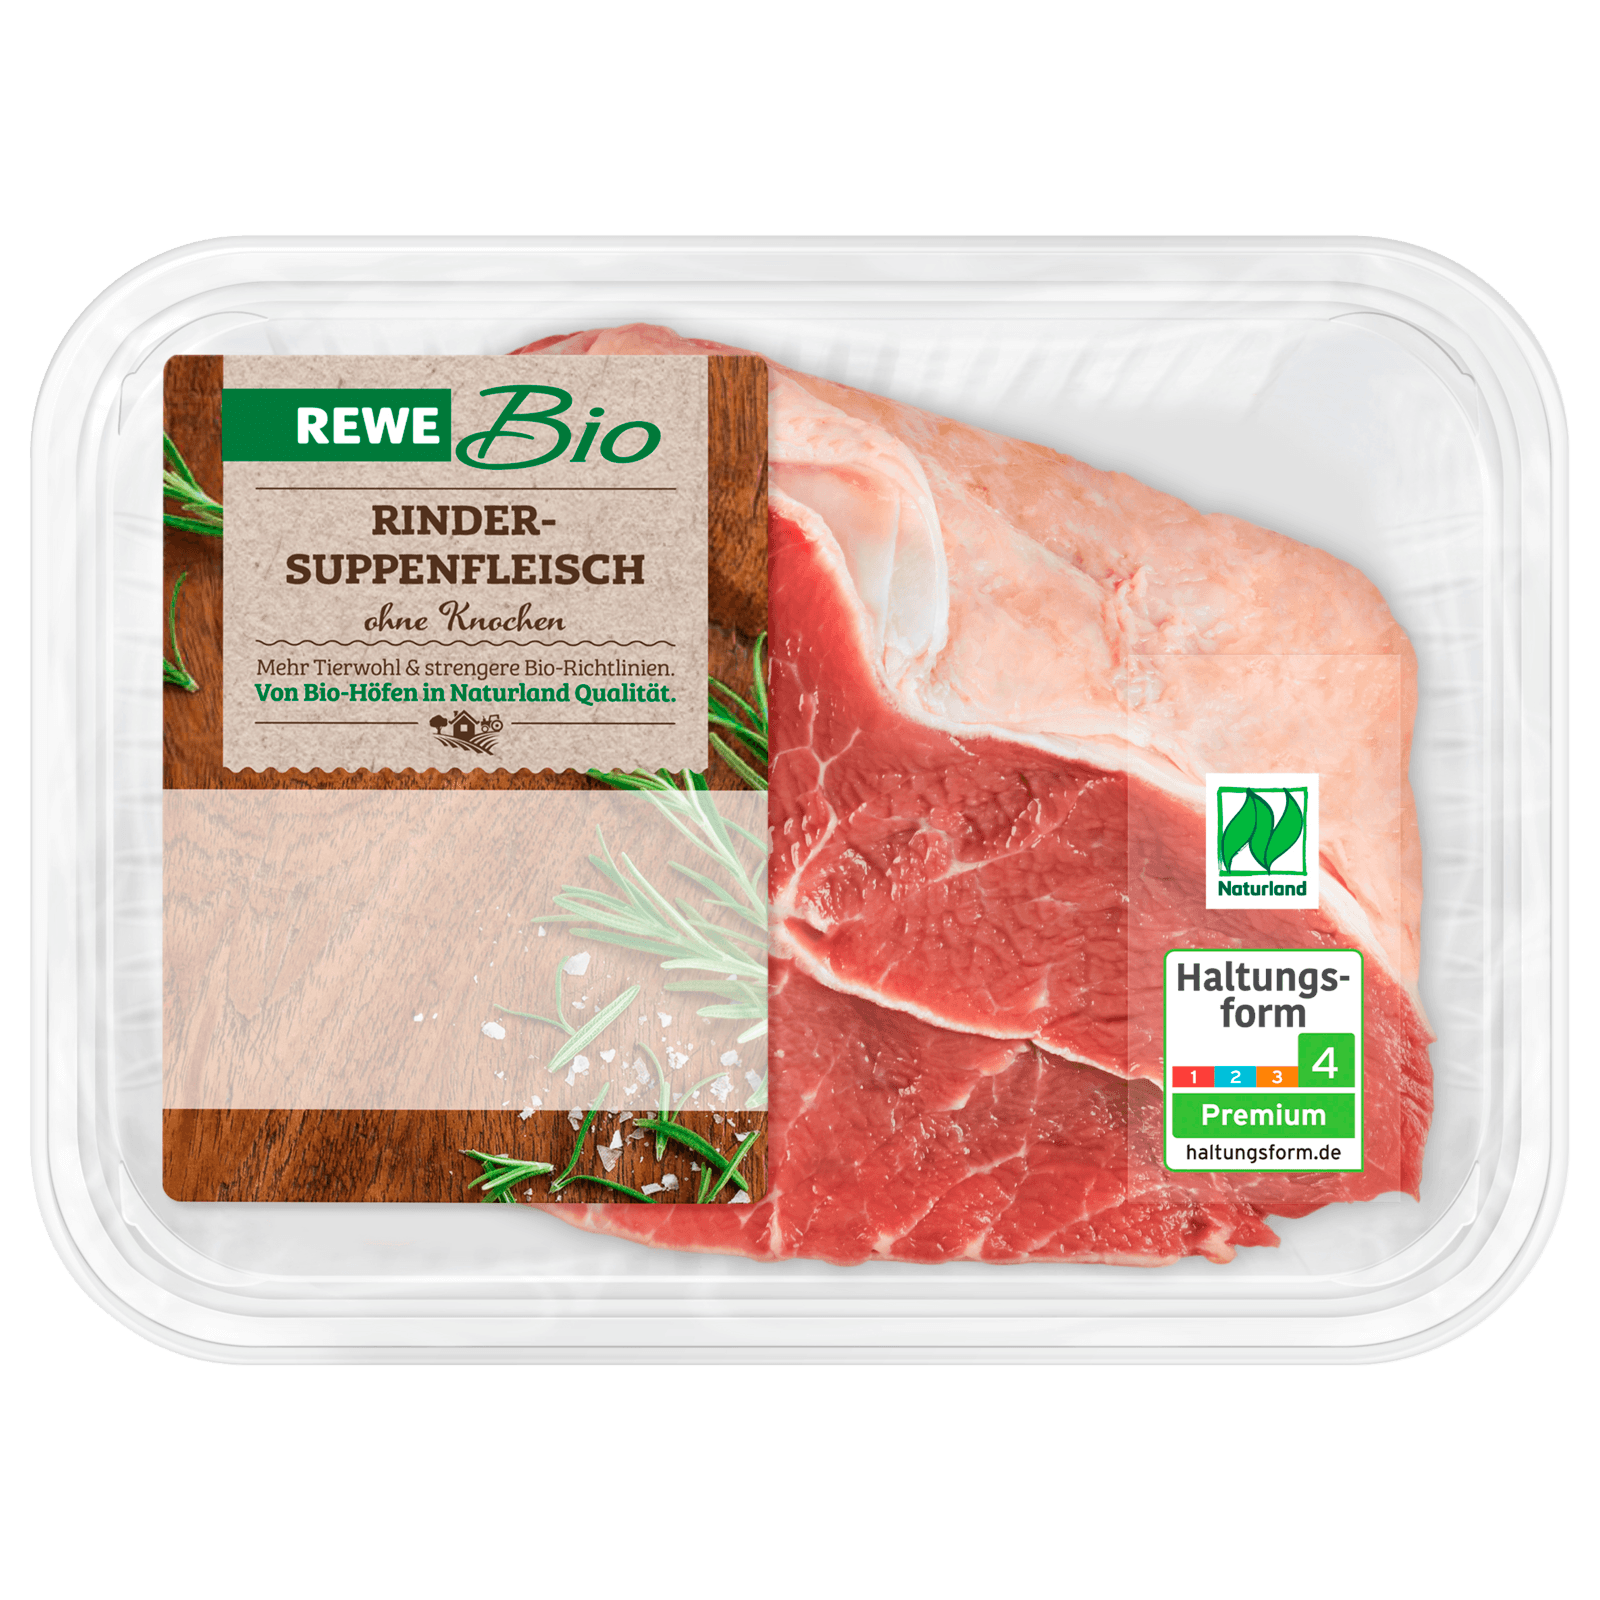 REWE Bio Rinder-Suppenfleisch 400g  für 7.16 EUR